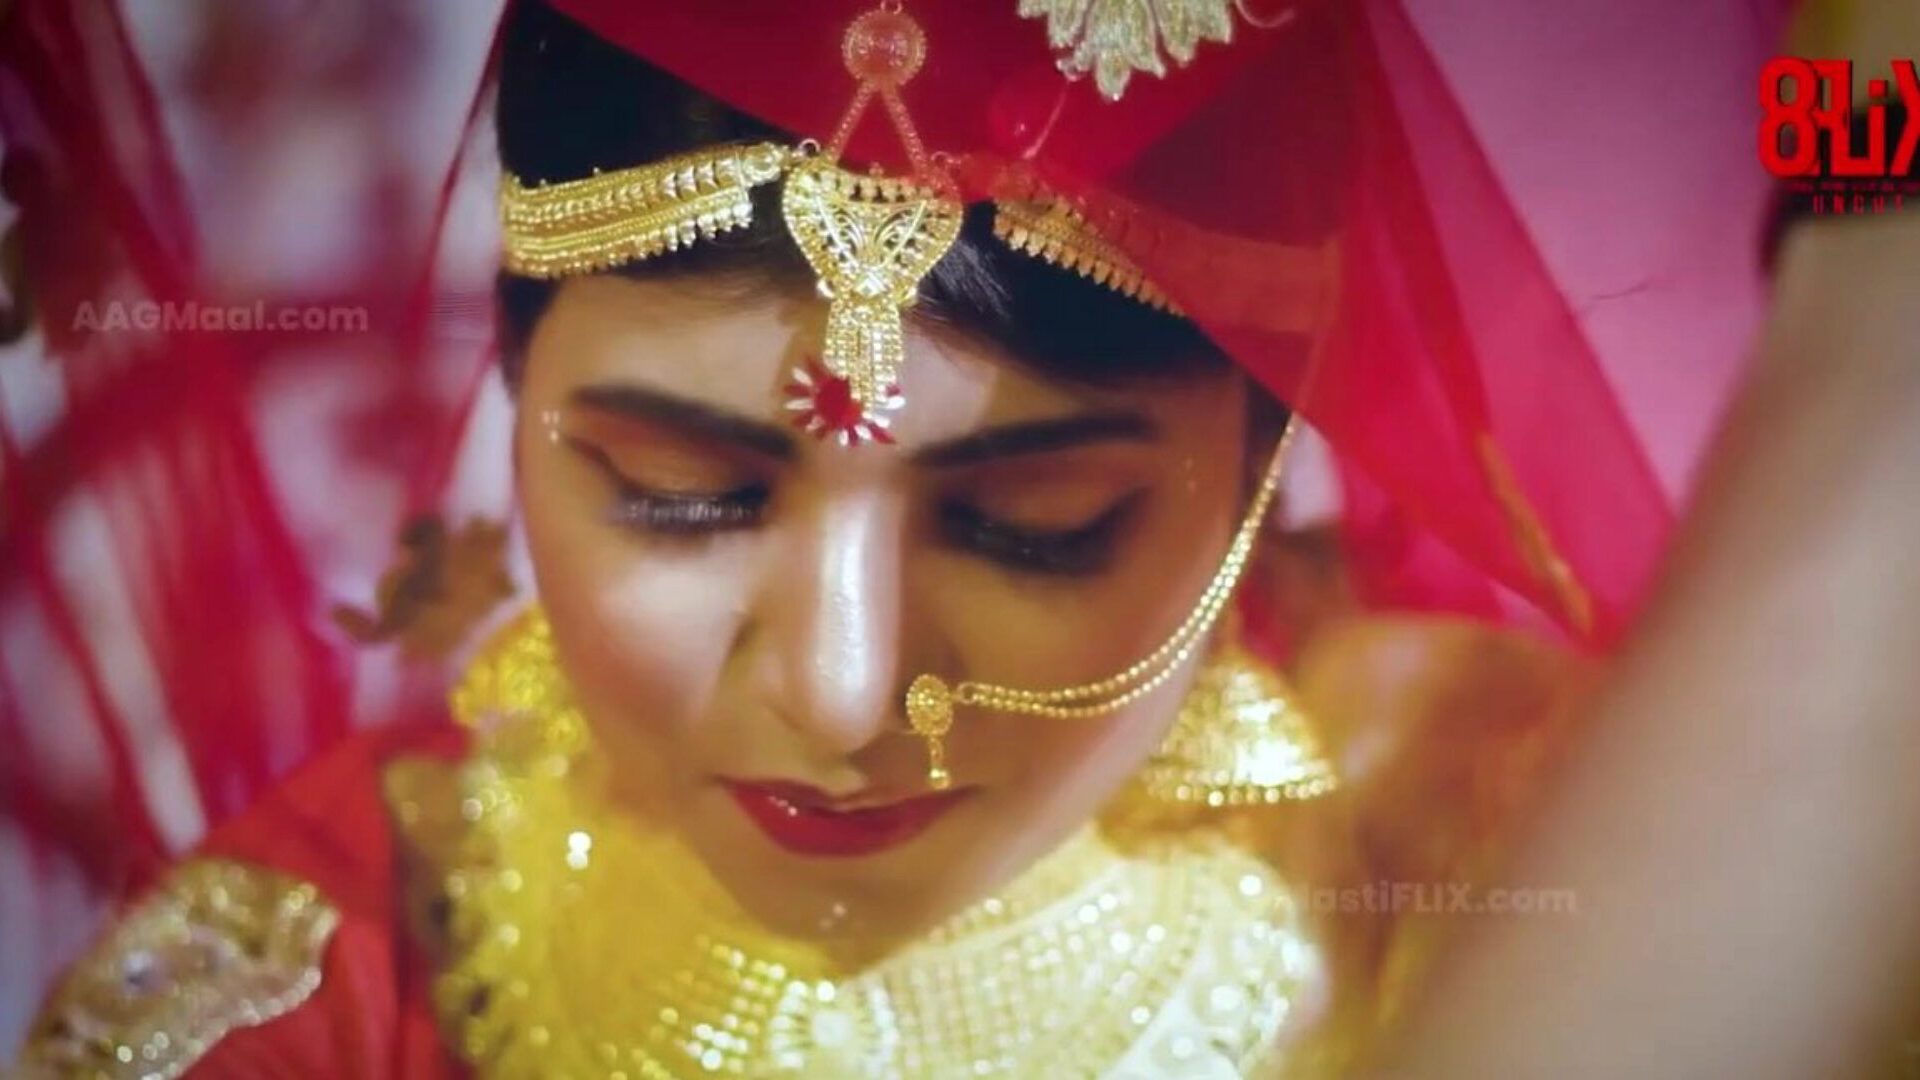 bebo γάμος άκοπος - επόμενο επίπεδο ινδικής σειράς ιστού